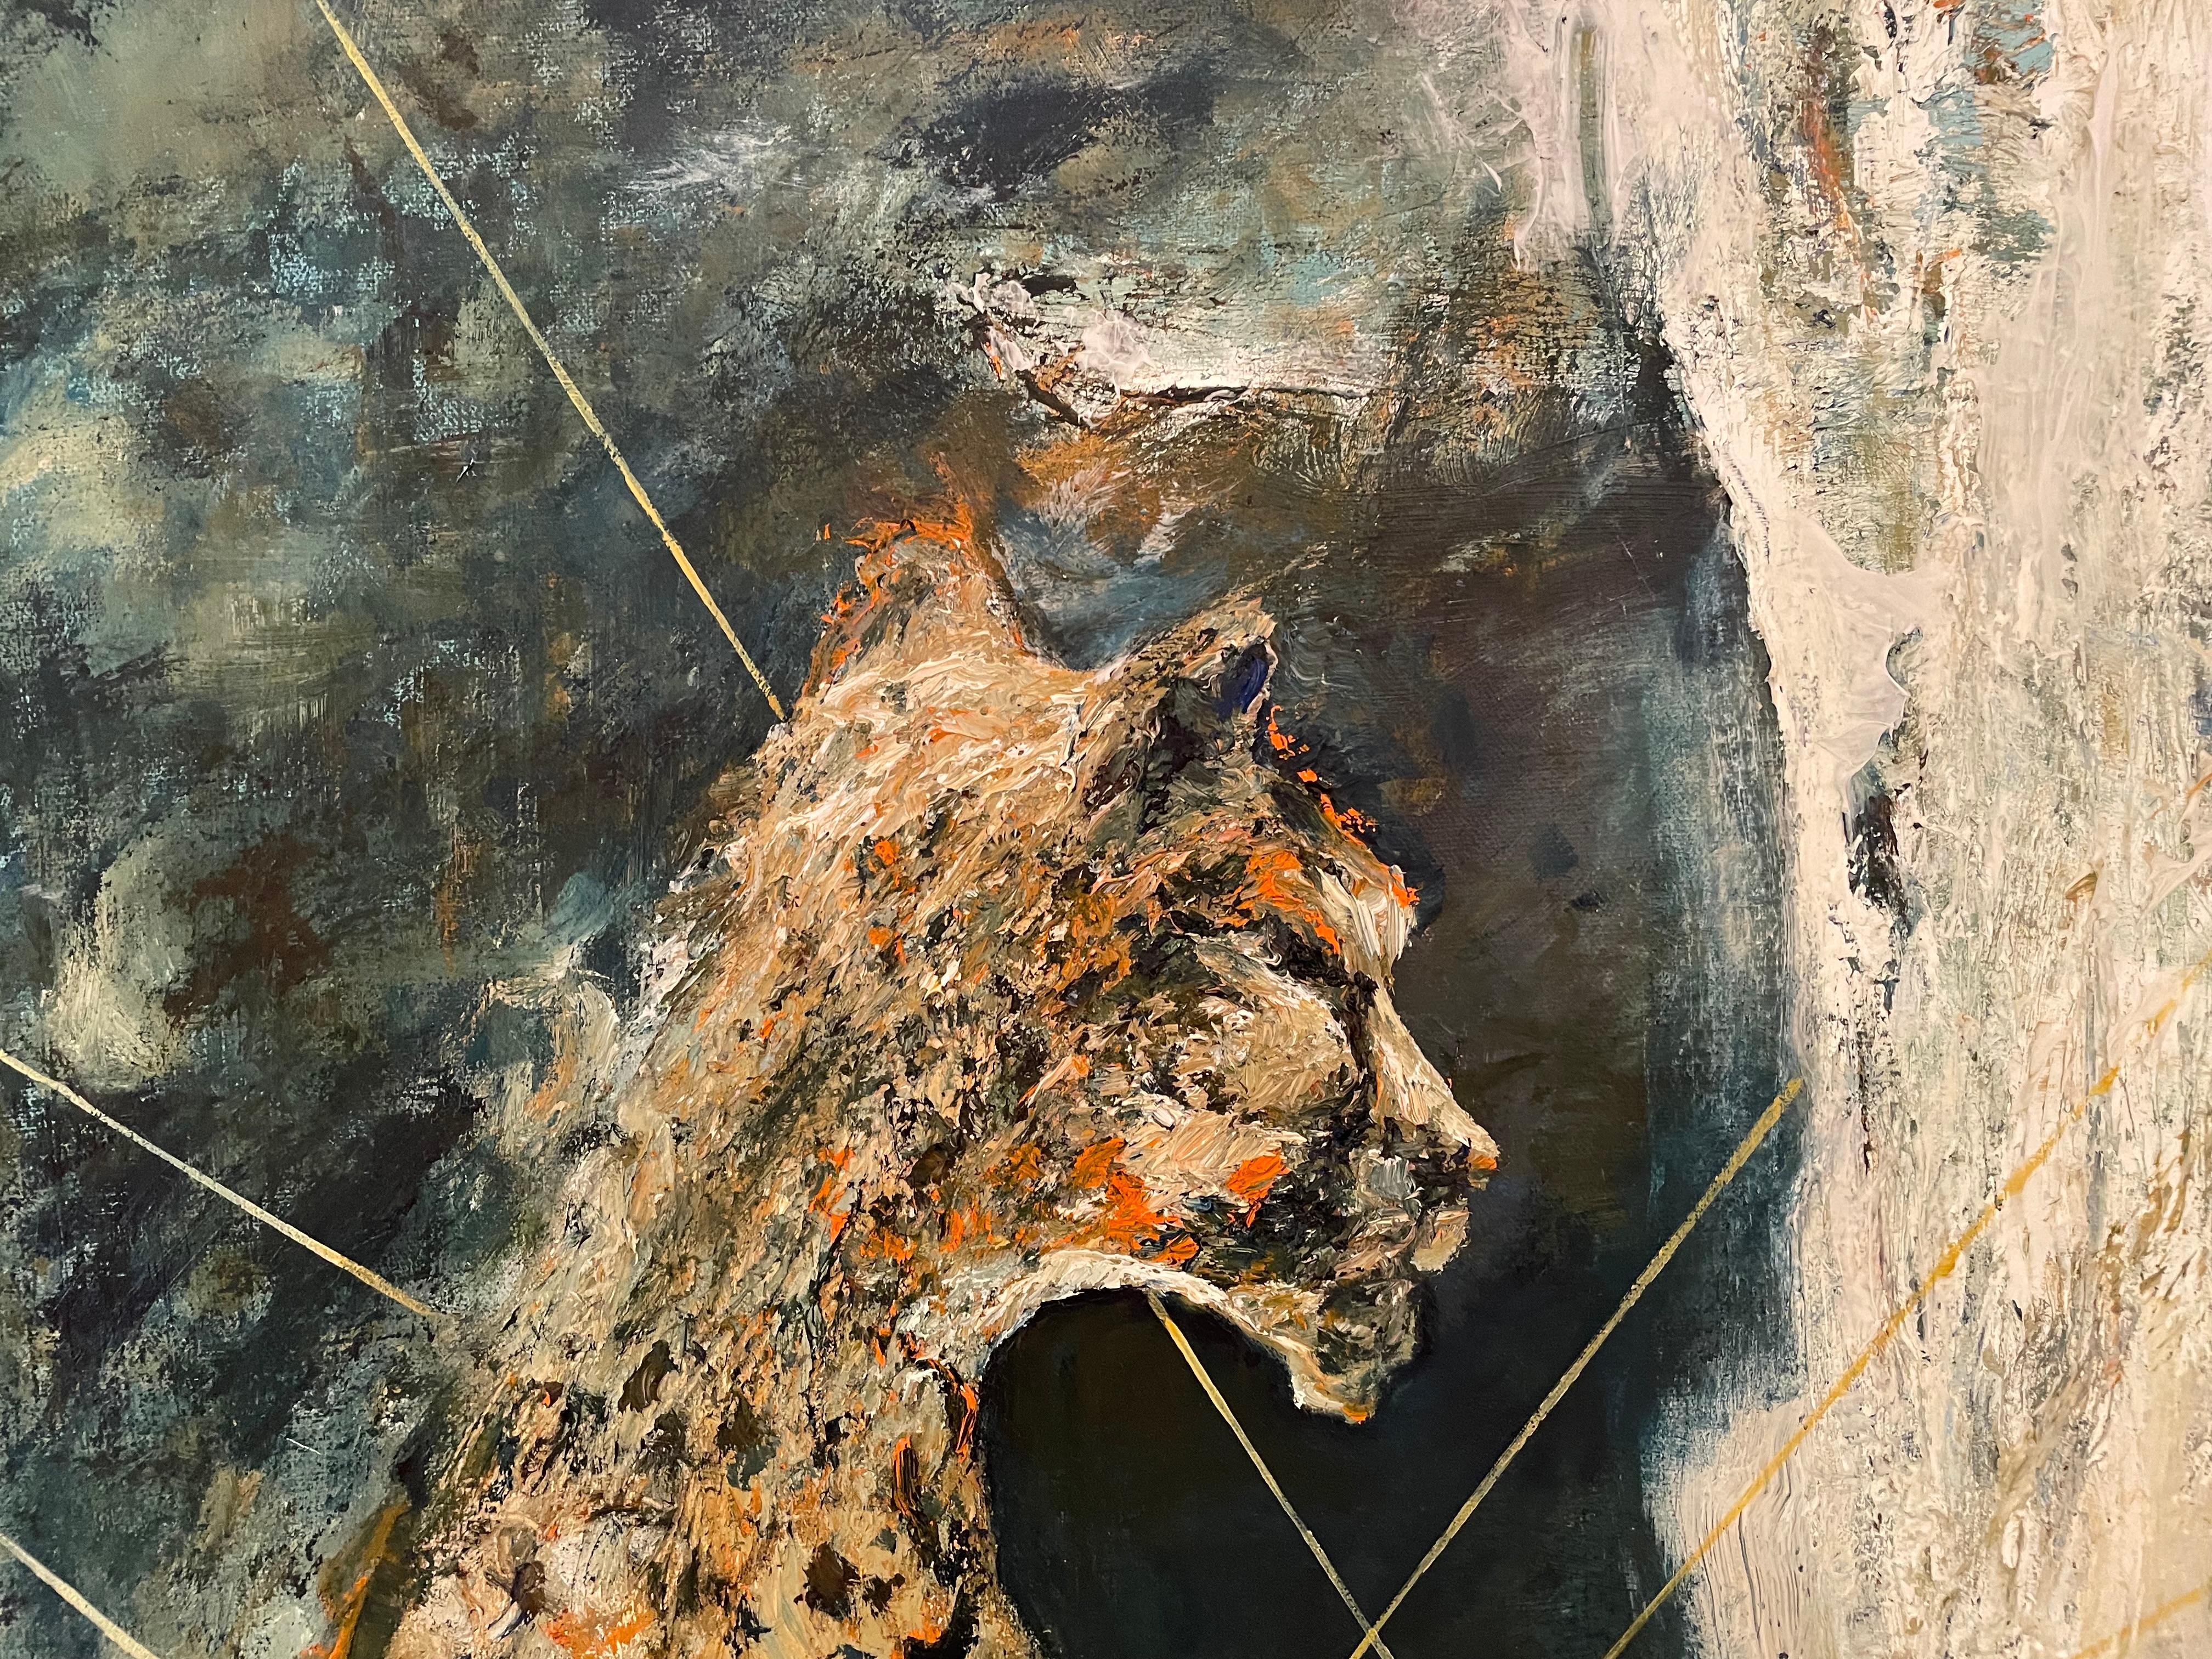 The Leopards' Tiere Kunst Wildlife große Öl/Leinwand von Kron Z Tripp (Expressionismus), Painting, von Byron Z Trip